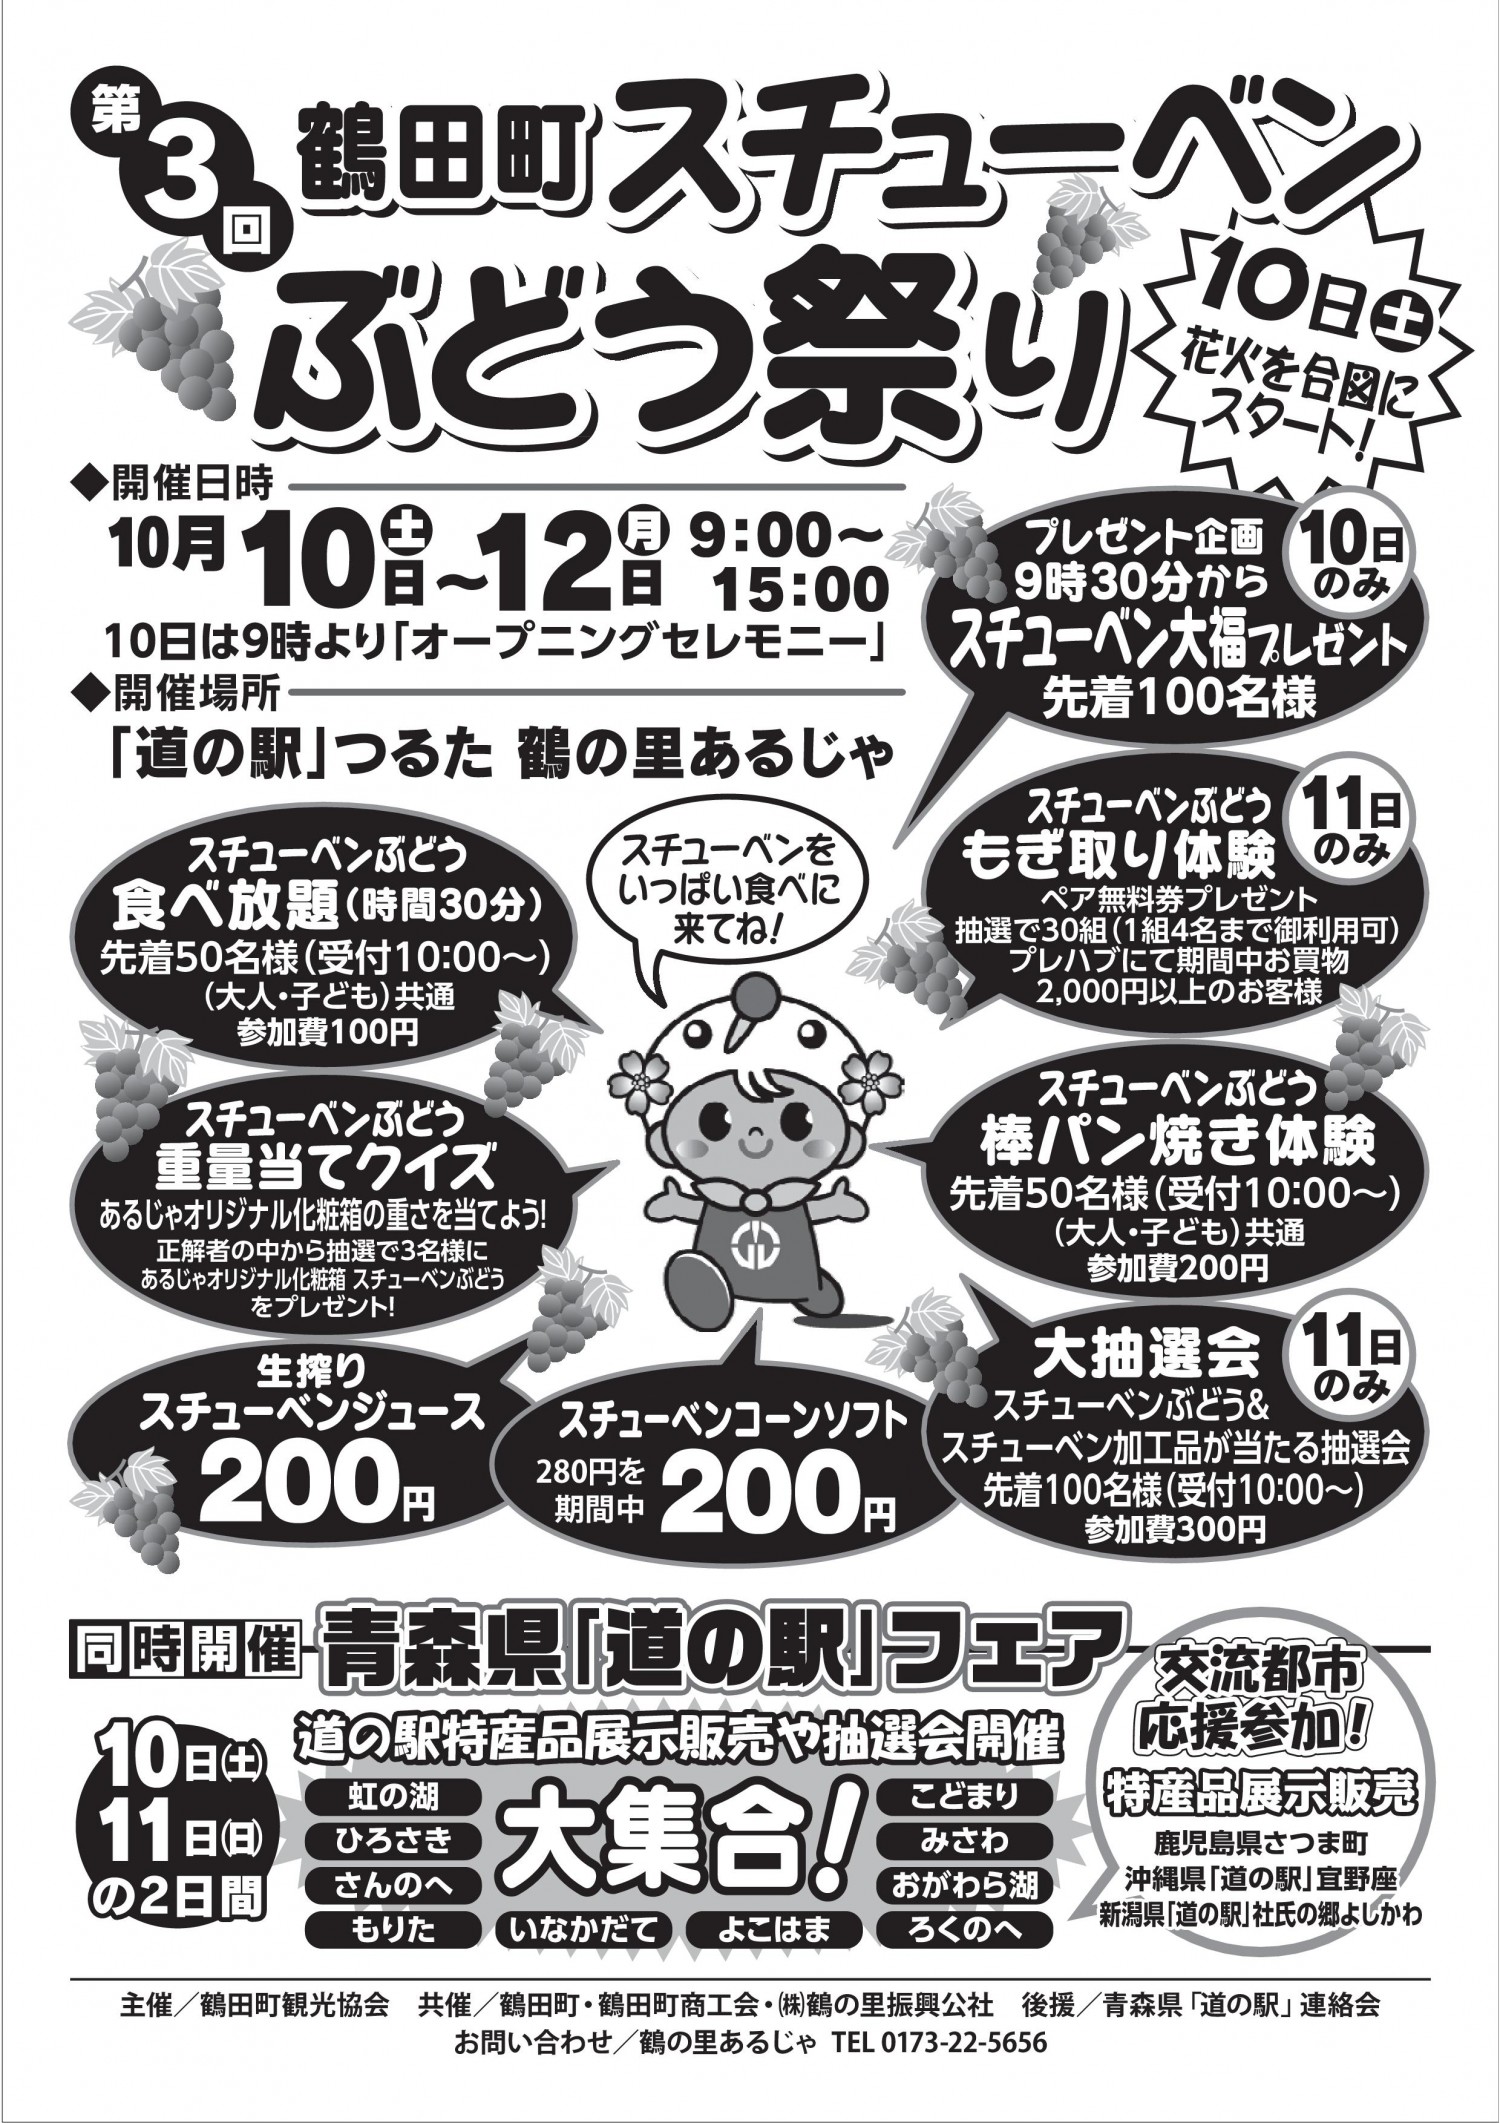 2015年10月10～12日 第3回鶴田町スチューベンぶどう祭り